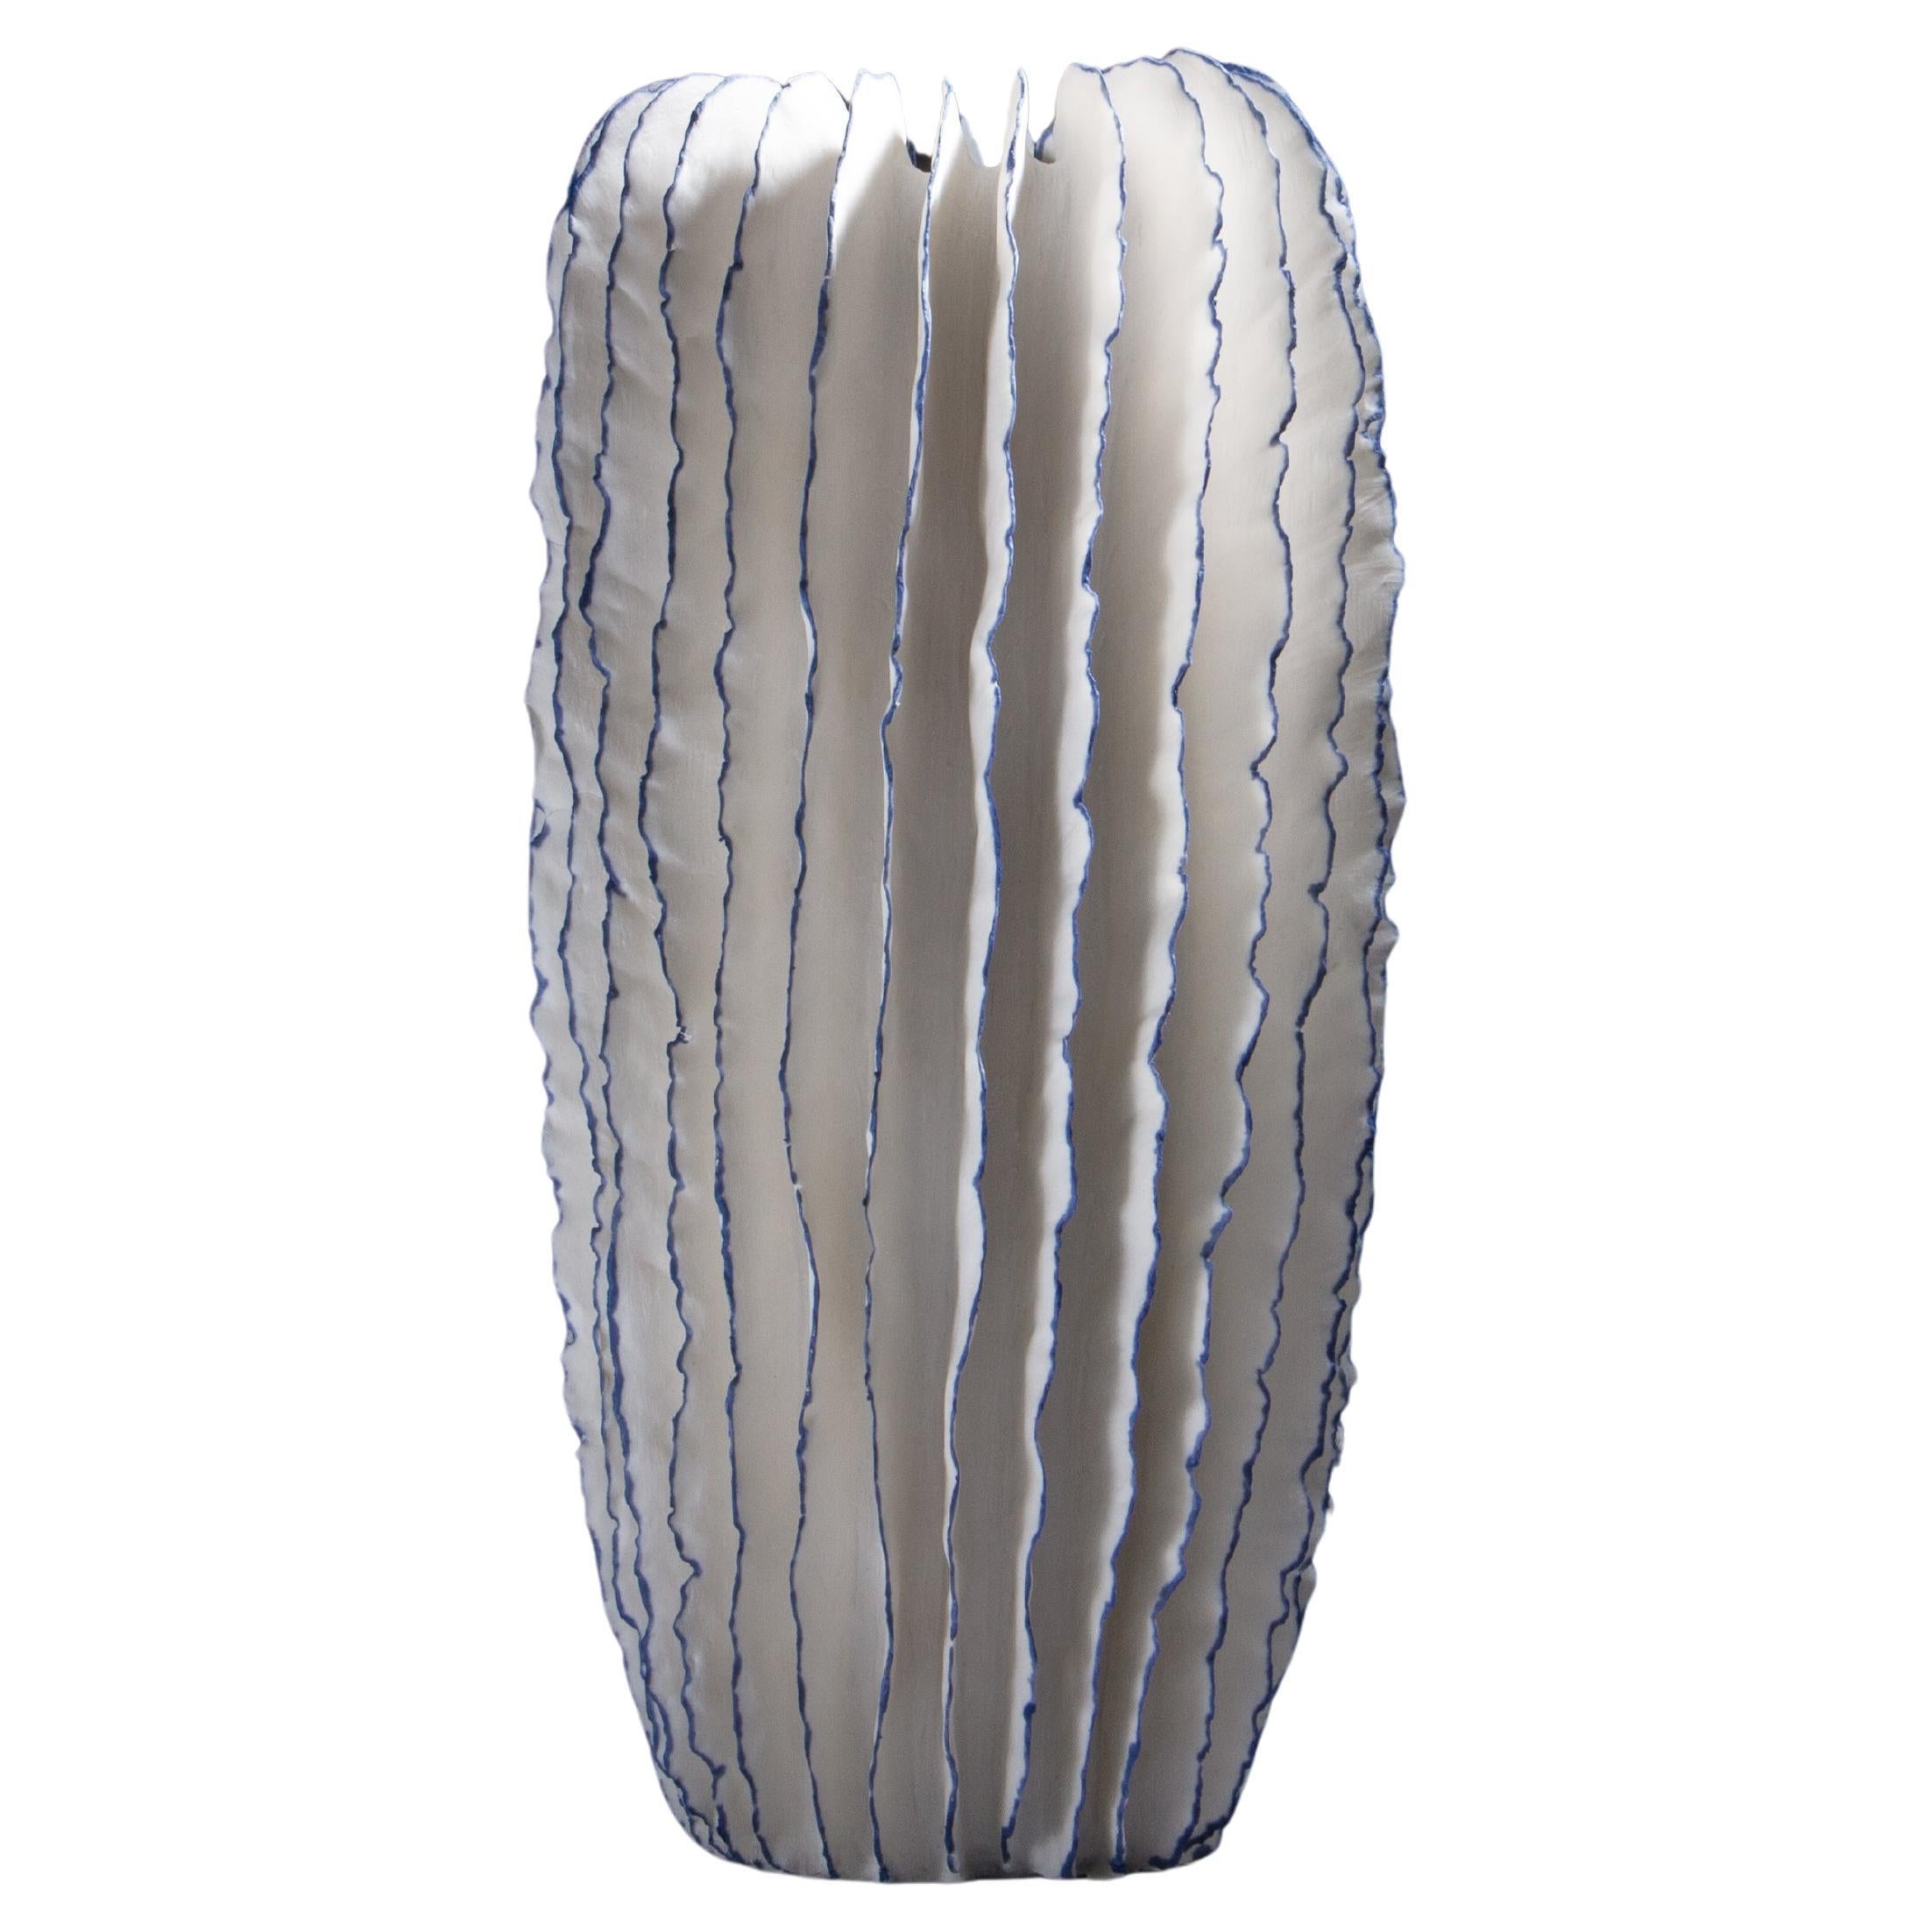 Sculpture en céramique bleue et blanche ressemblant à un cactus, Sandra Davolio